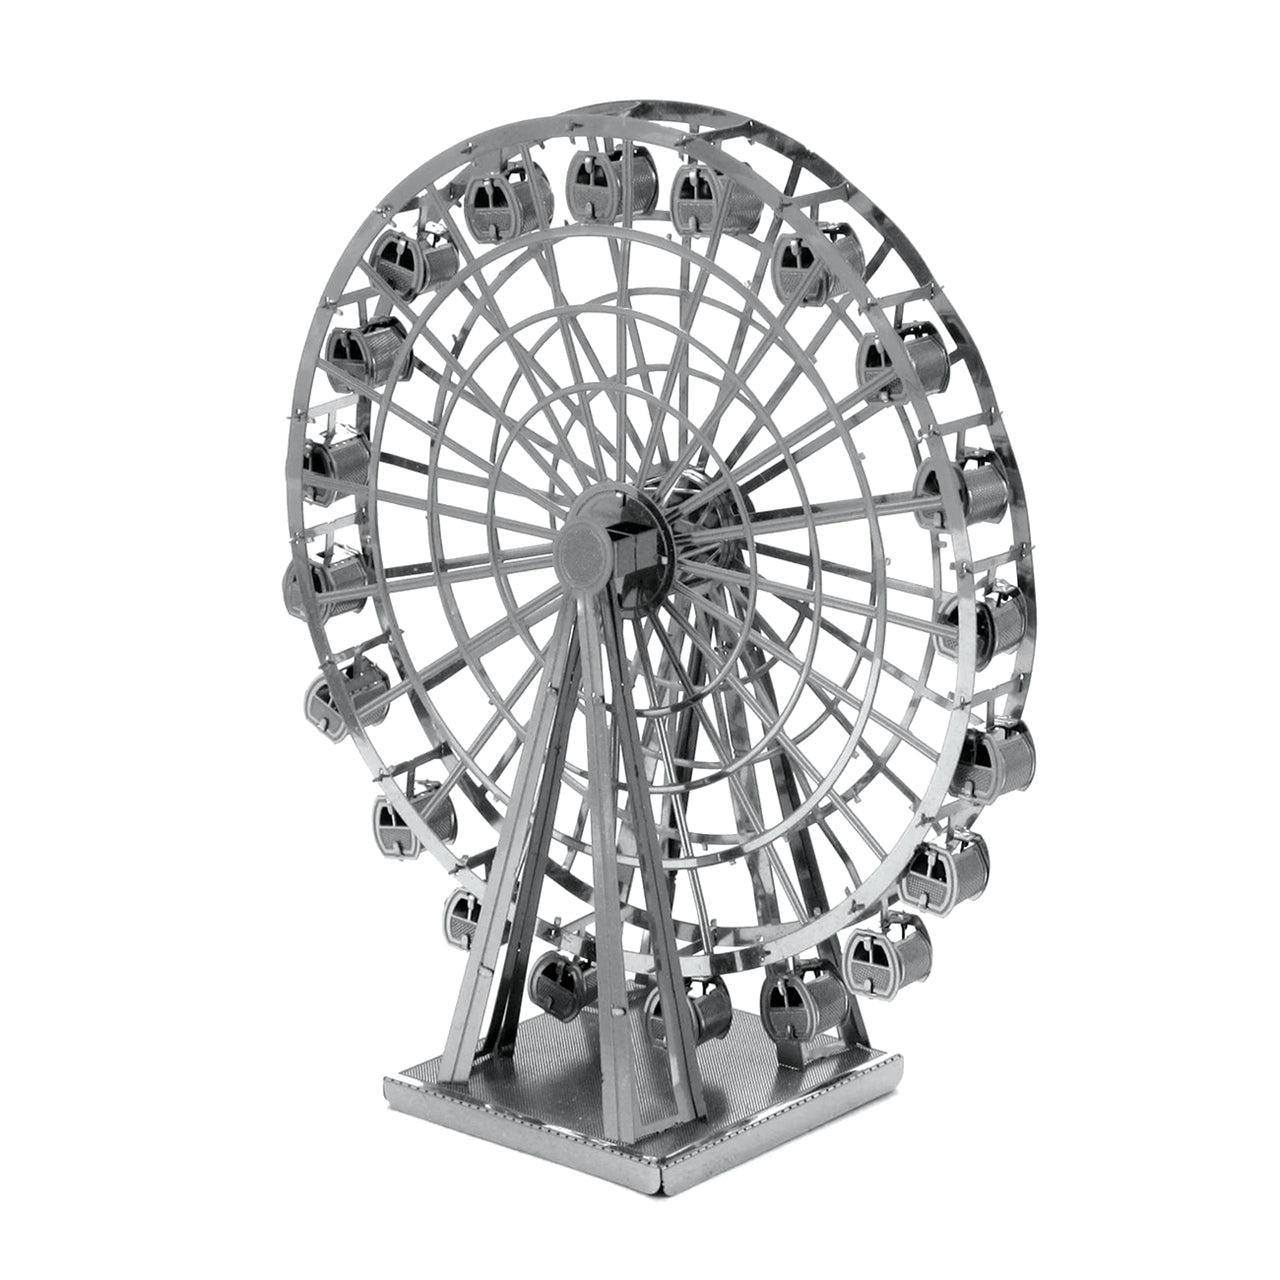 Ferris Wheel 3D Steel Model Kit Metal Earth